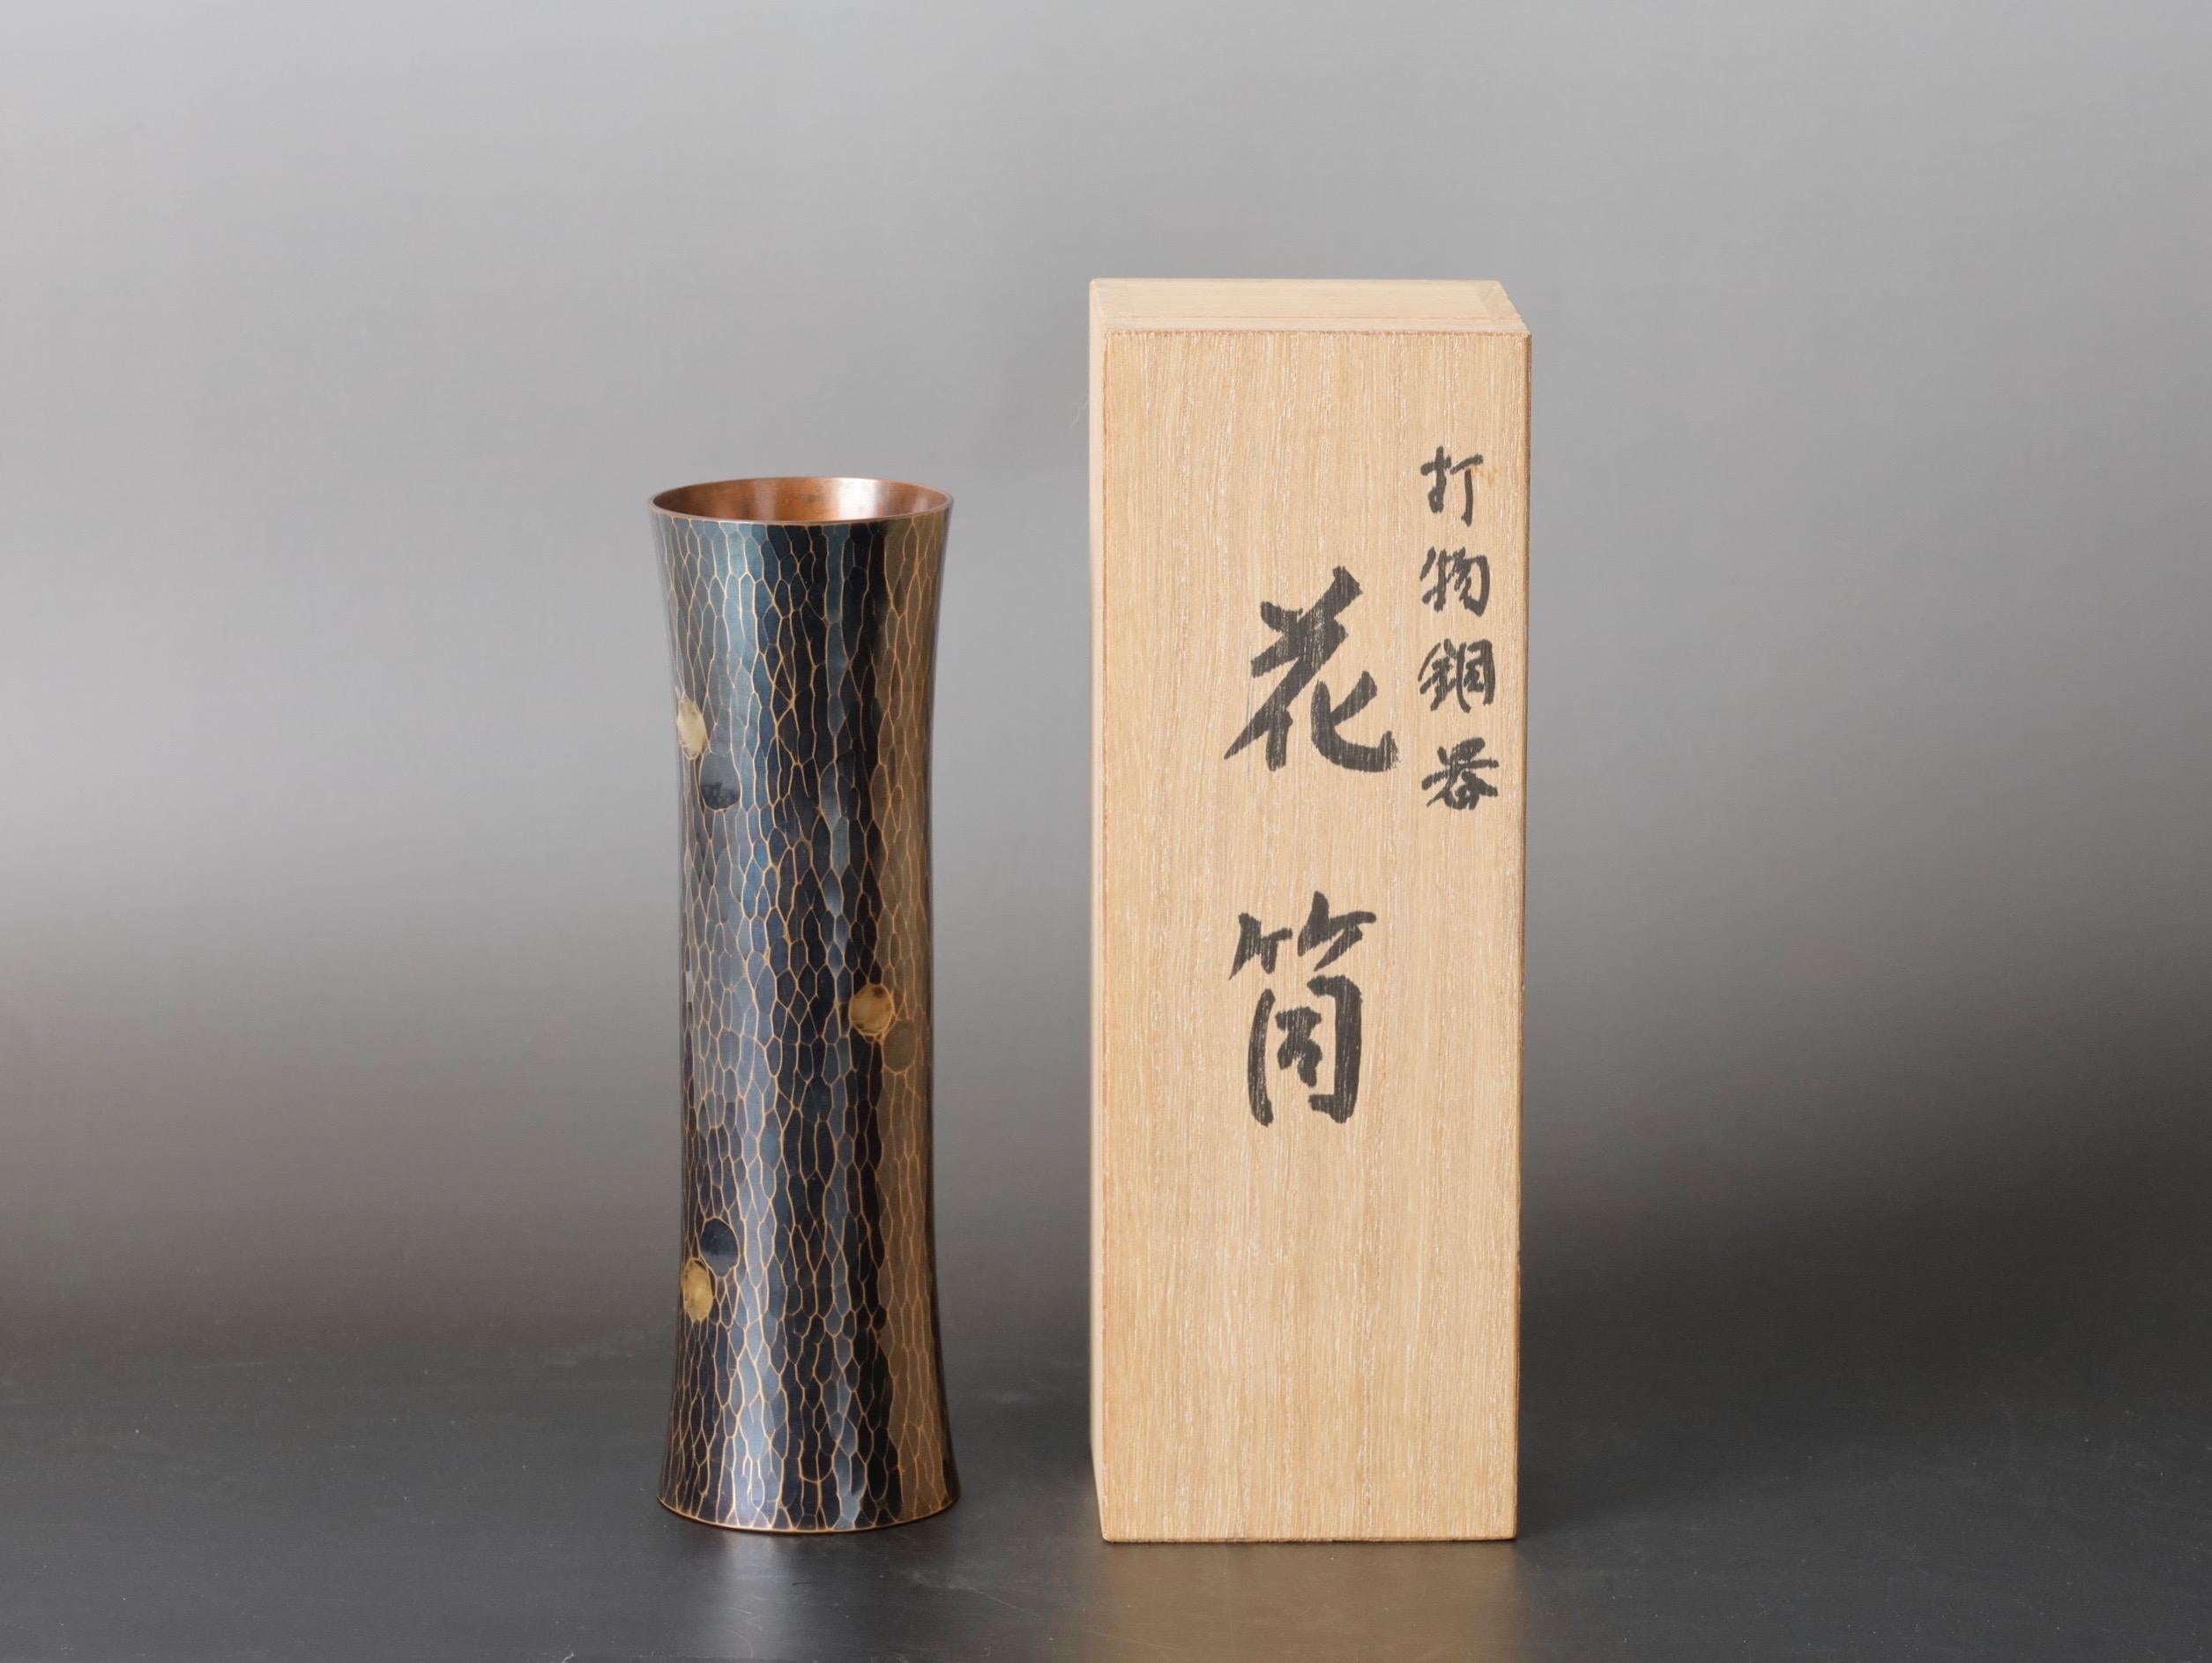 Diese exquisite Kupfervase ist ein einzigartiges Stück aus Japan, das im 20. Jahrhundert von Kyuhoudou handgehämmert wurde. Die Vase hat eine Höhe von 18 cm (7 Zoll), einen Durchmesser von 5,5 cm (2,1 Zoll) und ein Gewicht von 360 g (0,8 lbs). Es